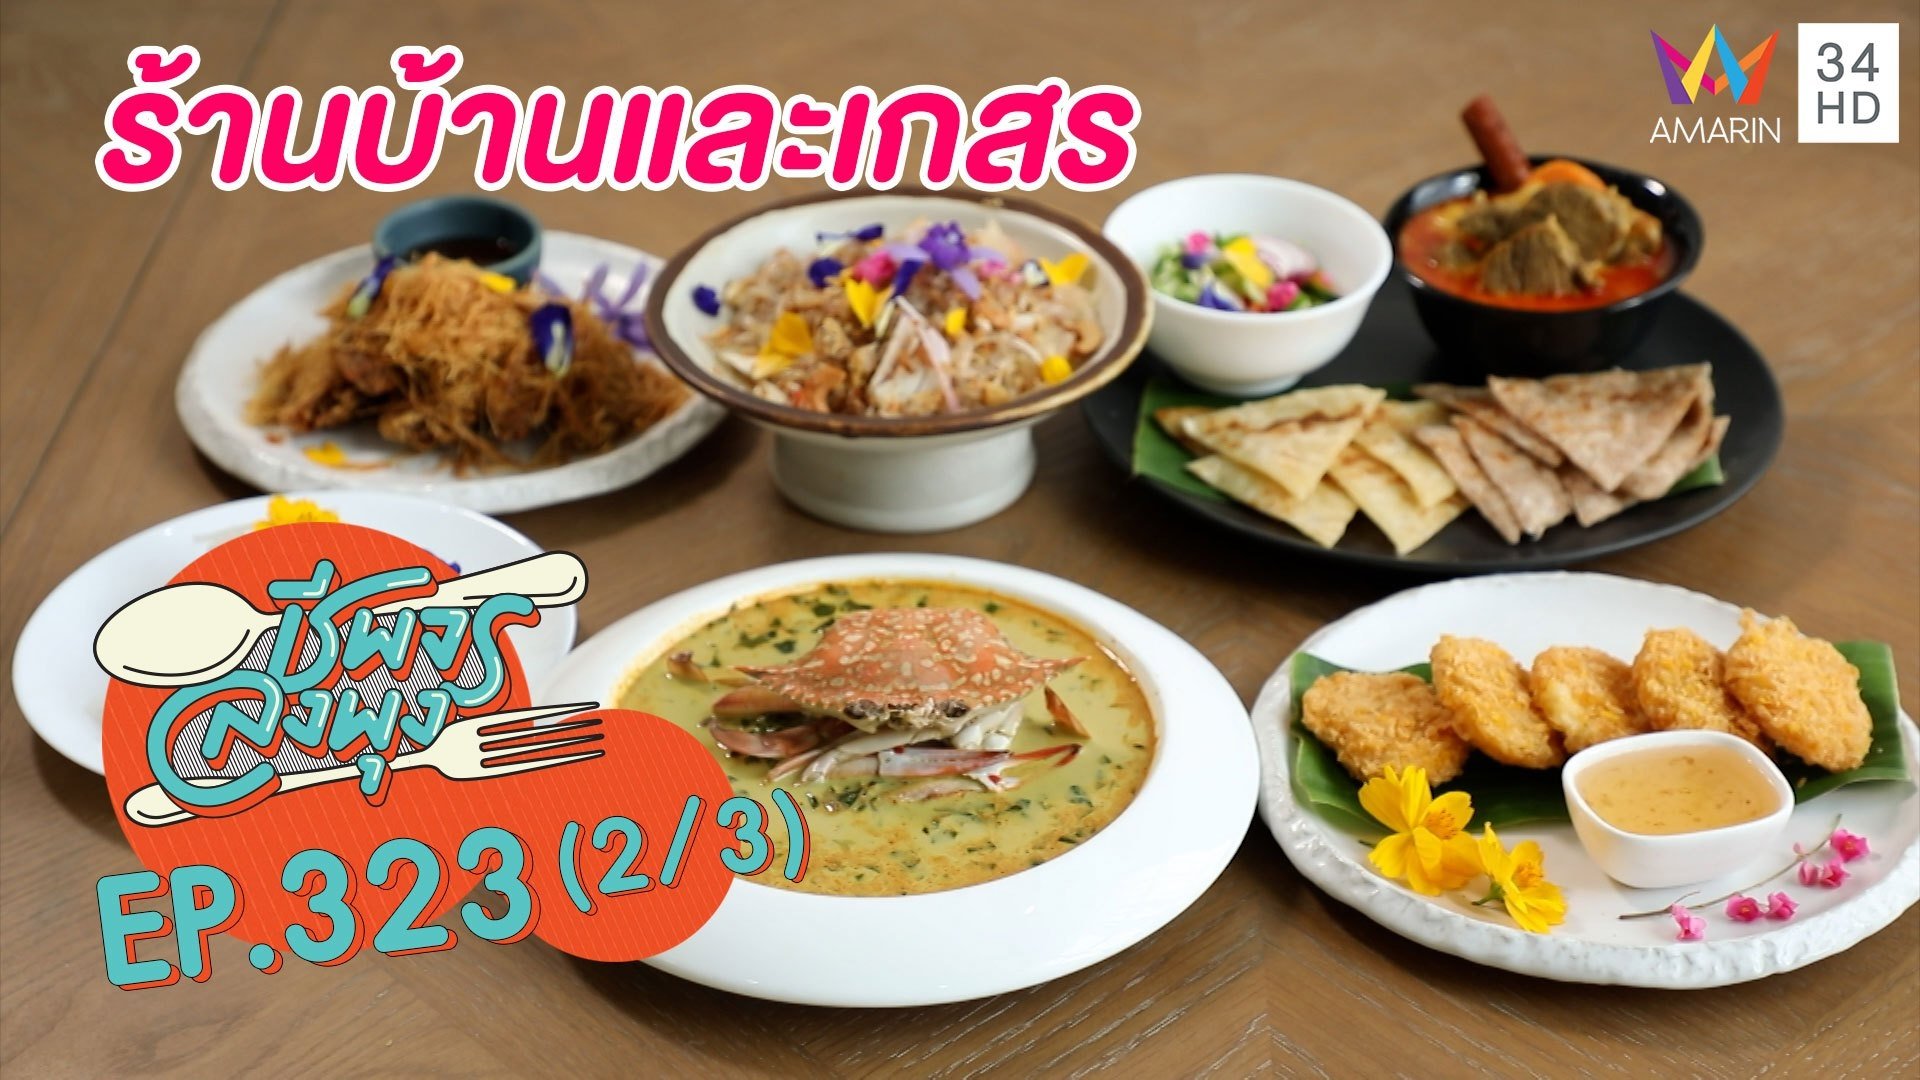 ลิ้มรสอาหารไทยแท้ @ร้านบ้านและเกสร | ชีพจรลงพุง | 11 ก.ย. 64 (2/3) | AMARIN TVHD34